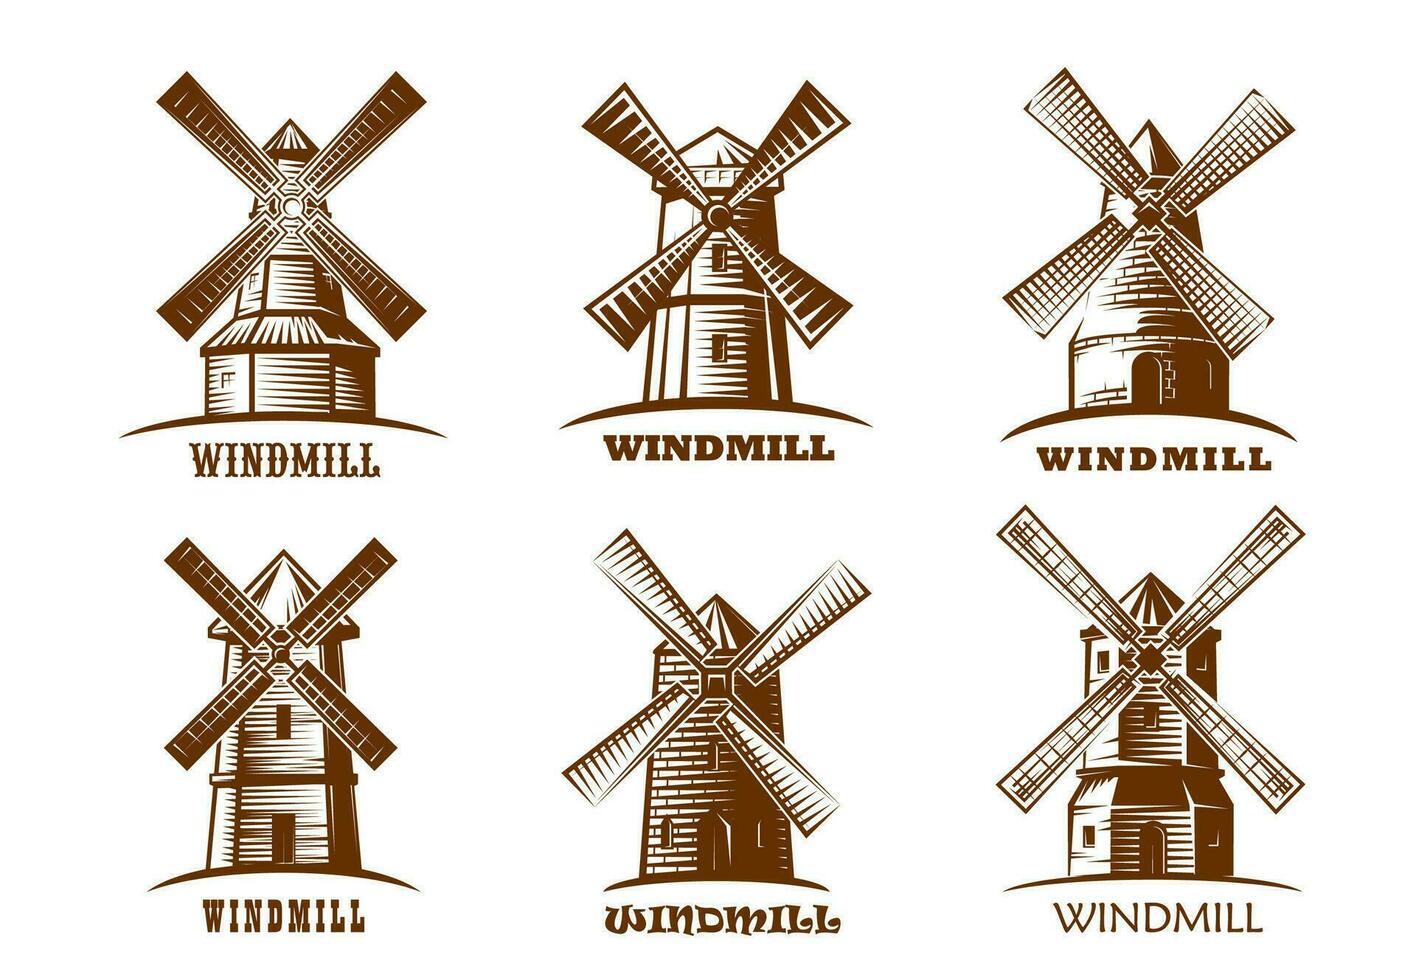 desenho animado antigo moinho de vento rural 3788769 Vetor no Vecteezy